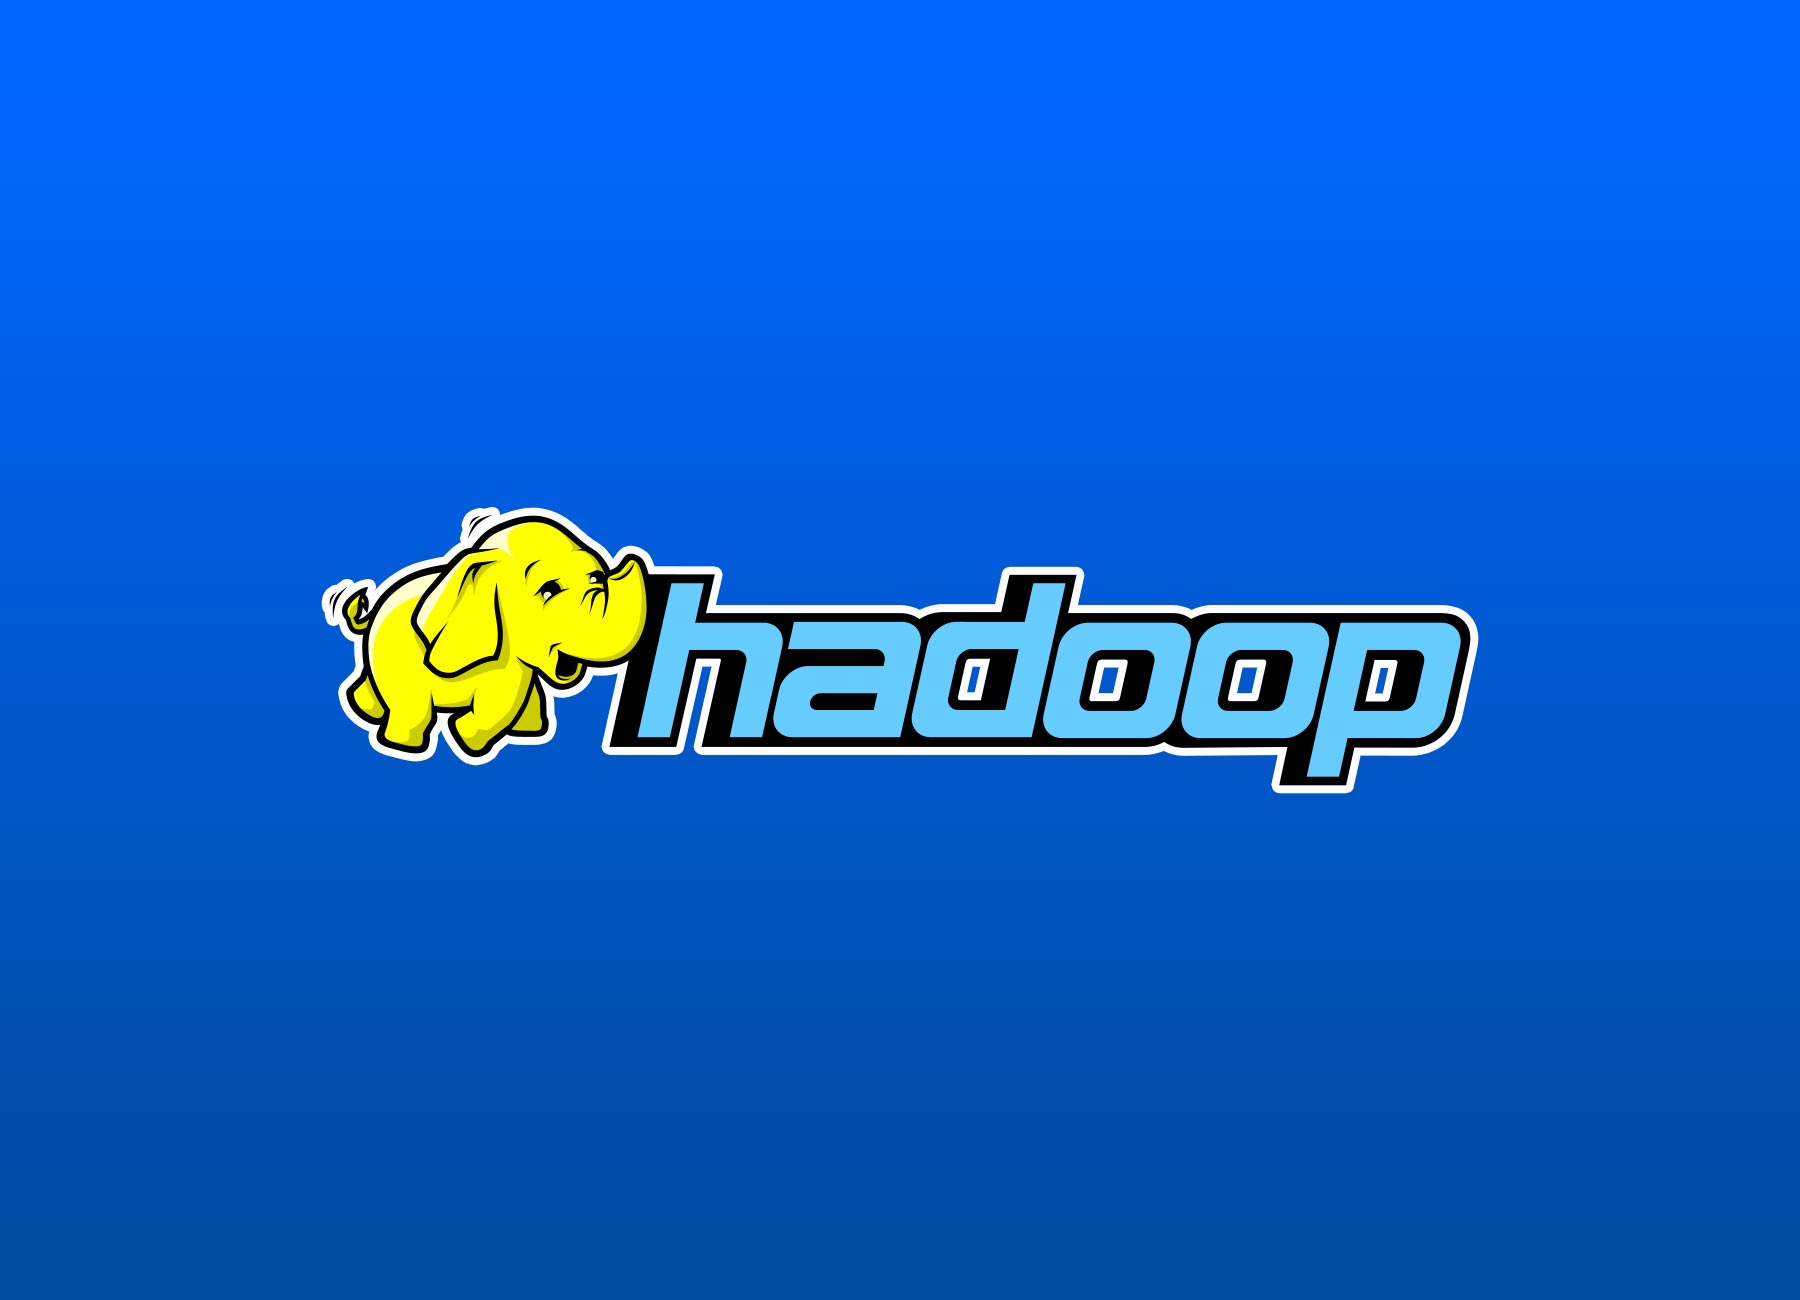 In-depth Understanding of Hadoop and Its Components